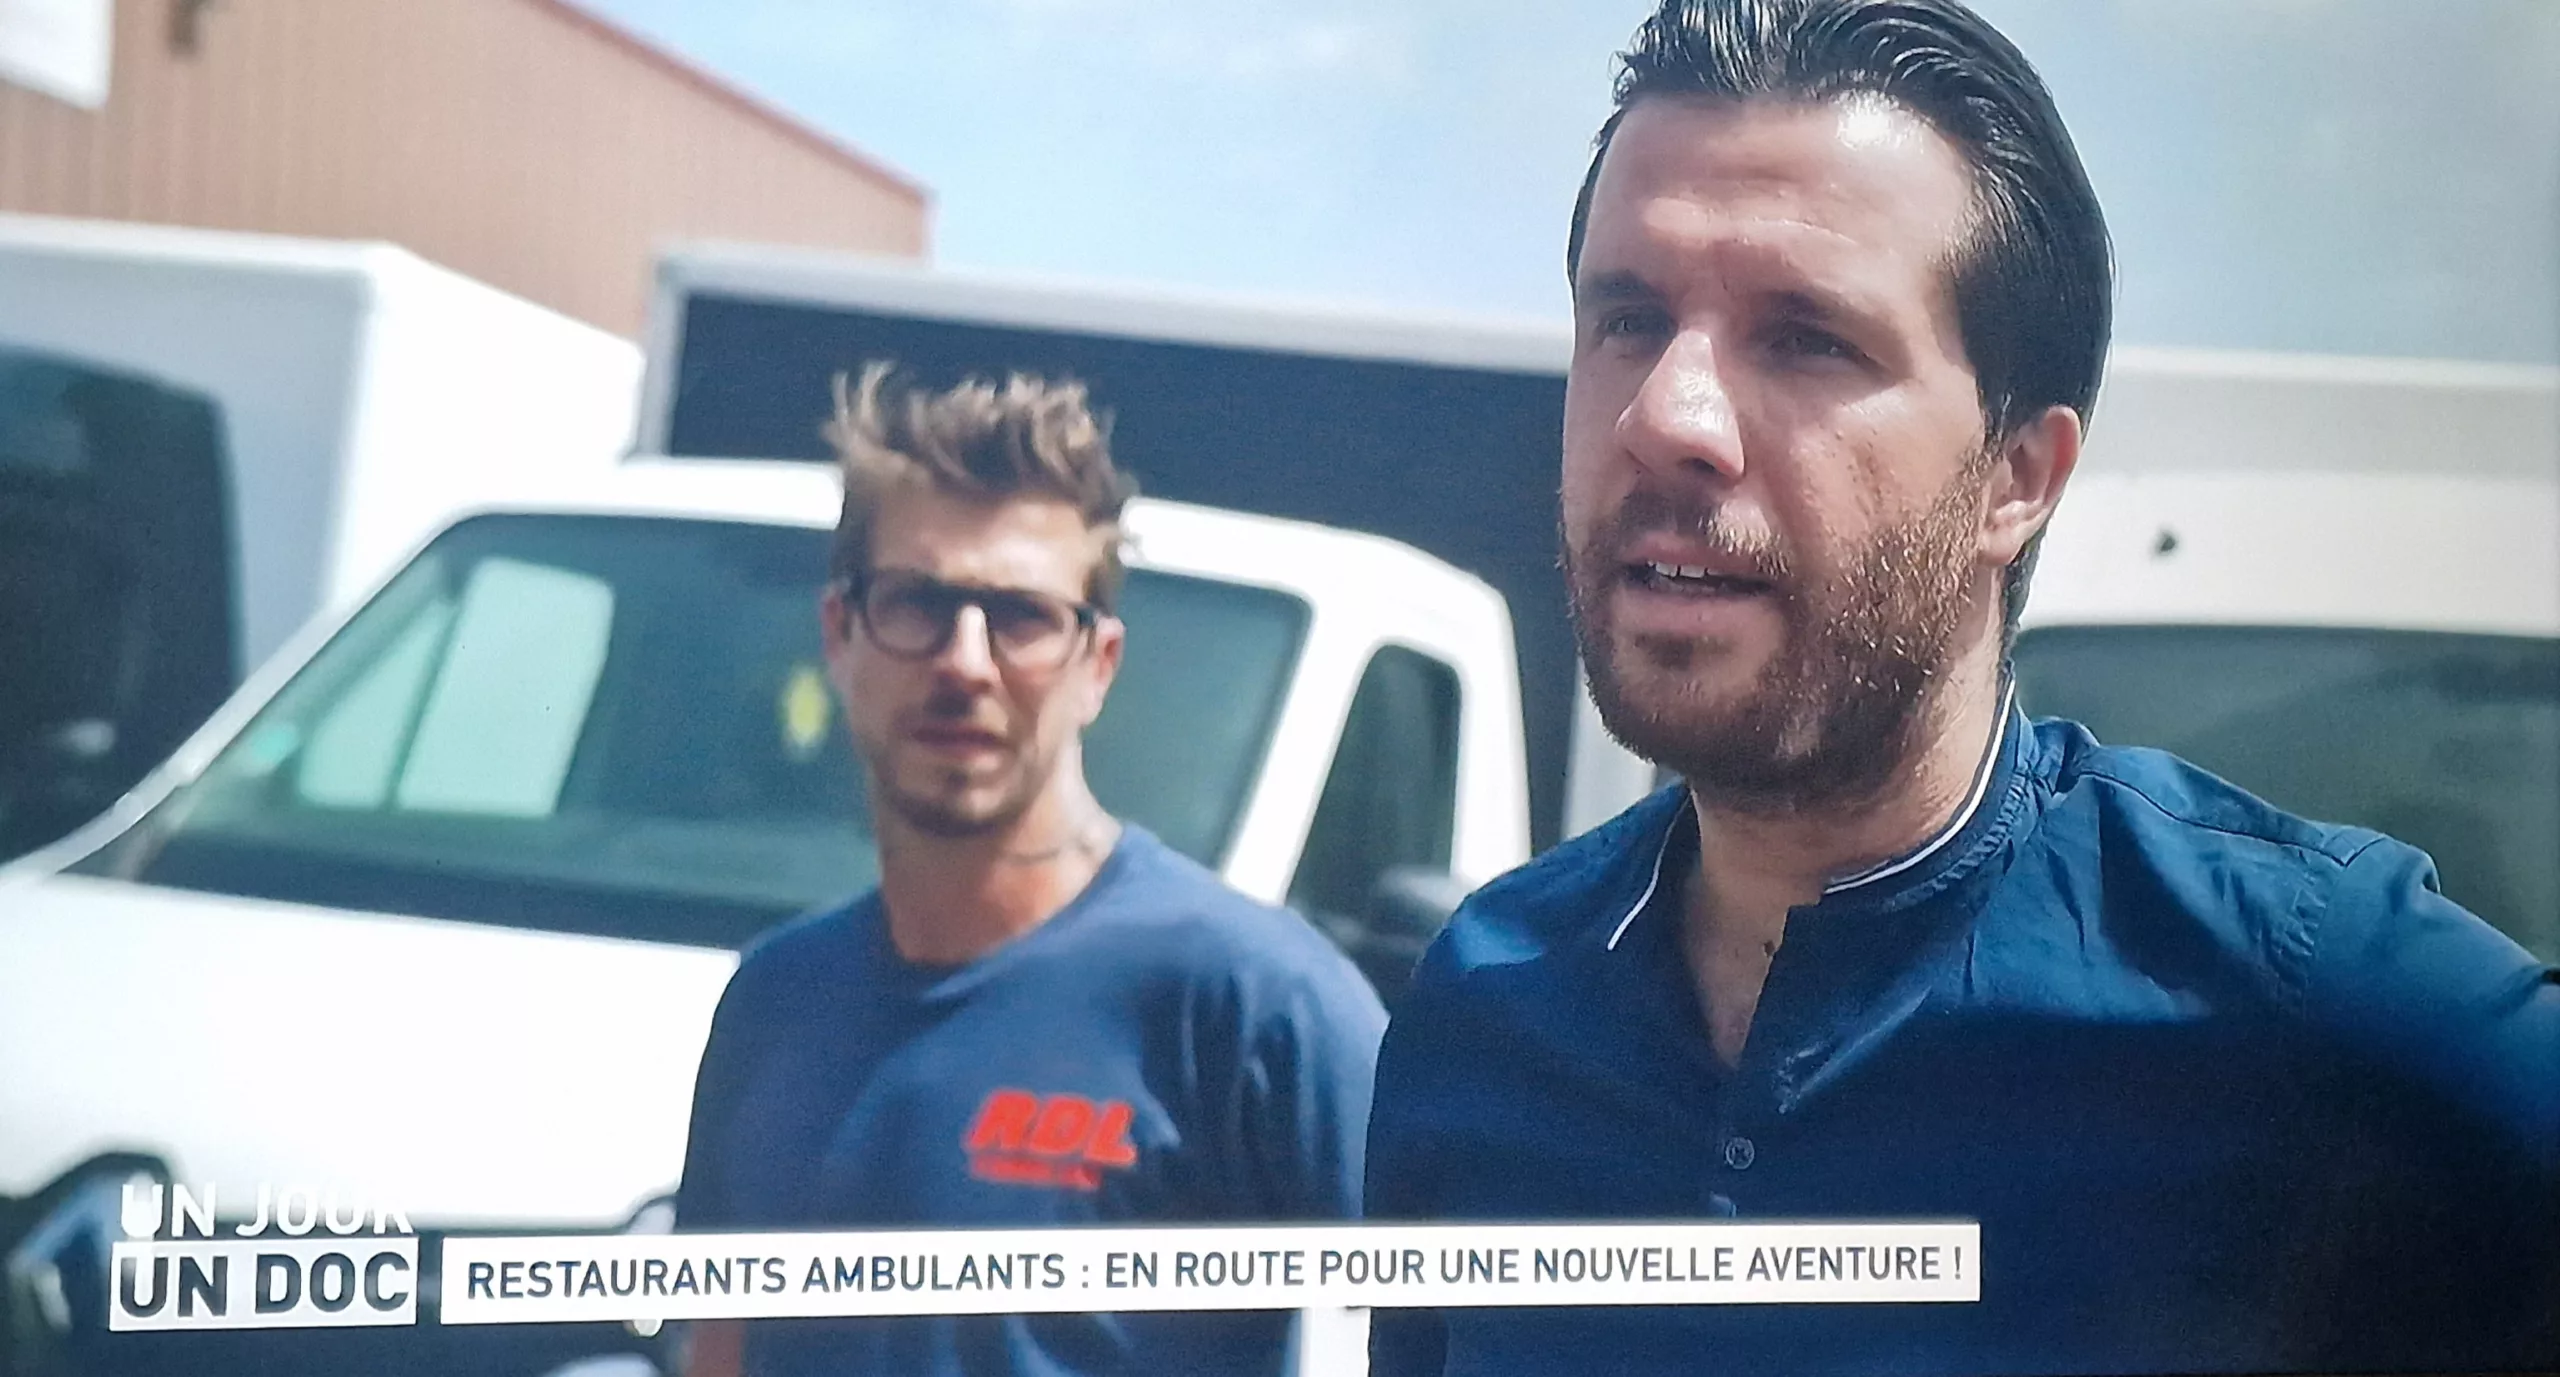 Nicolas Willaume : Champion de France de Burger 2018, Une Success Story à Découvrir dans “Un jour, un Doc” sur M6